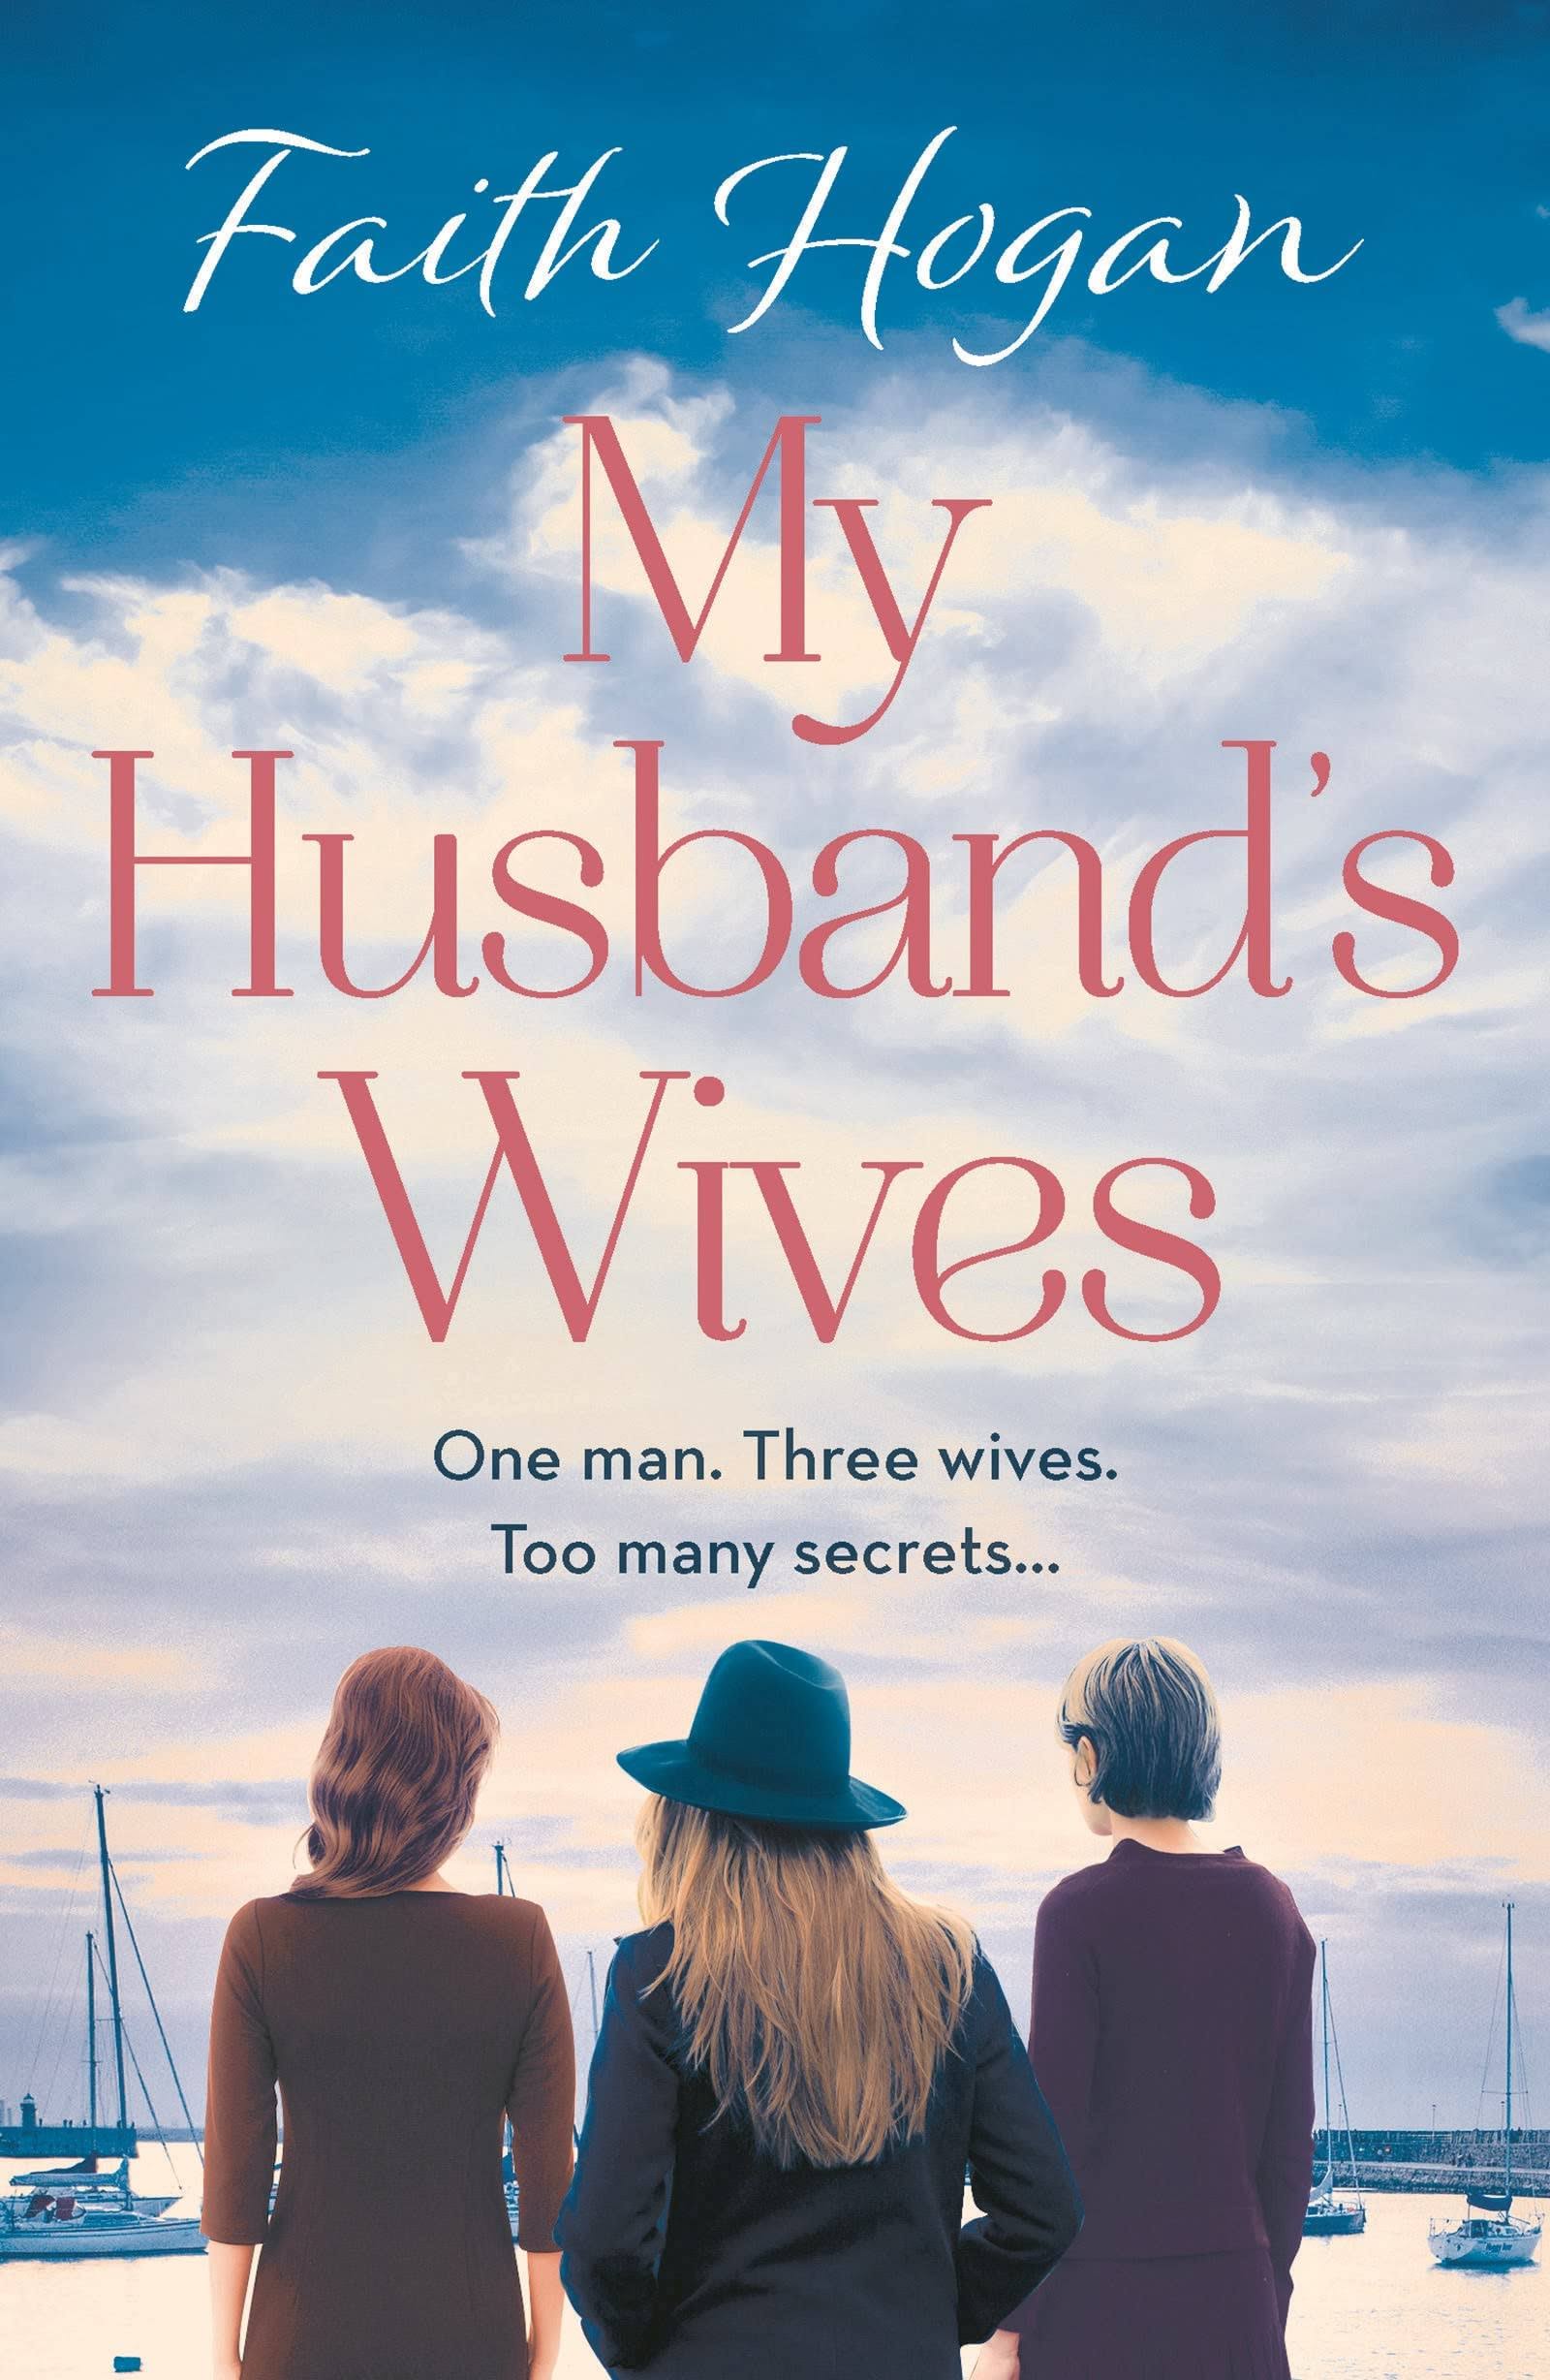 My Husband's Wives by Faith Hogan